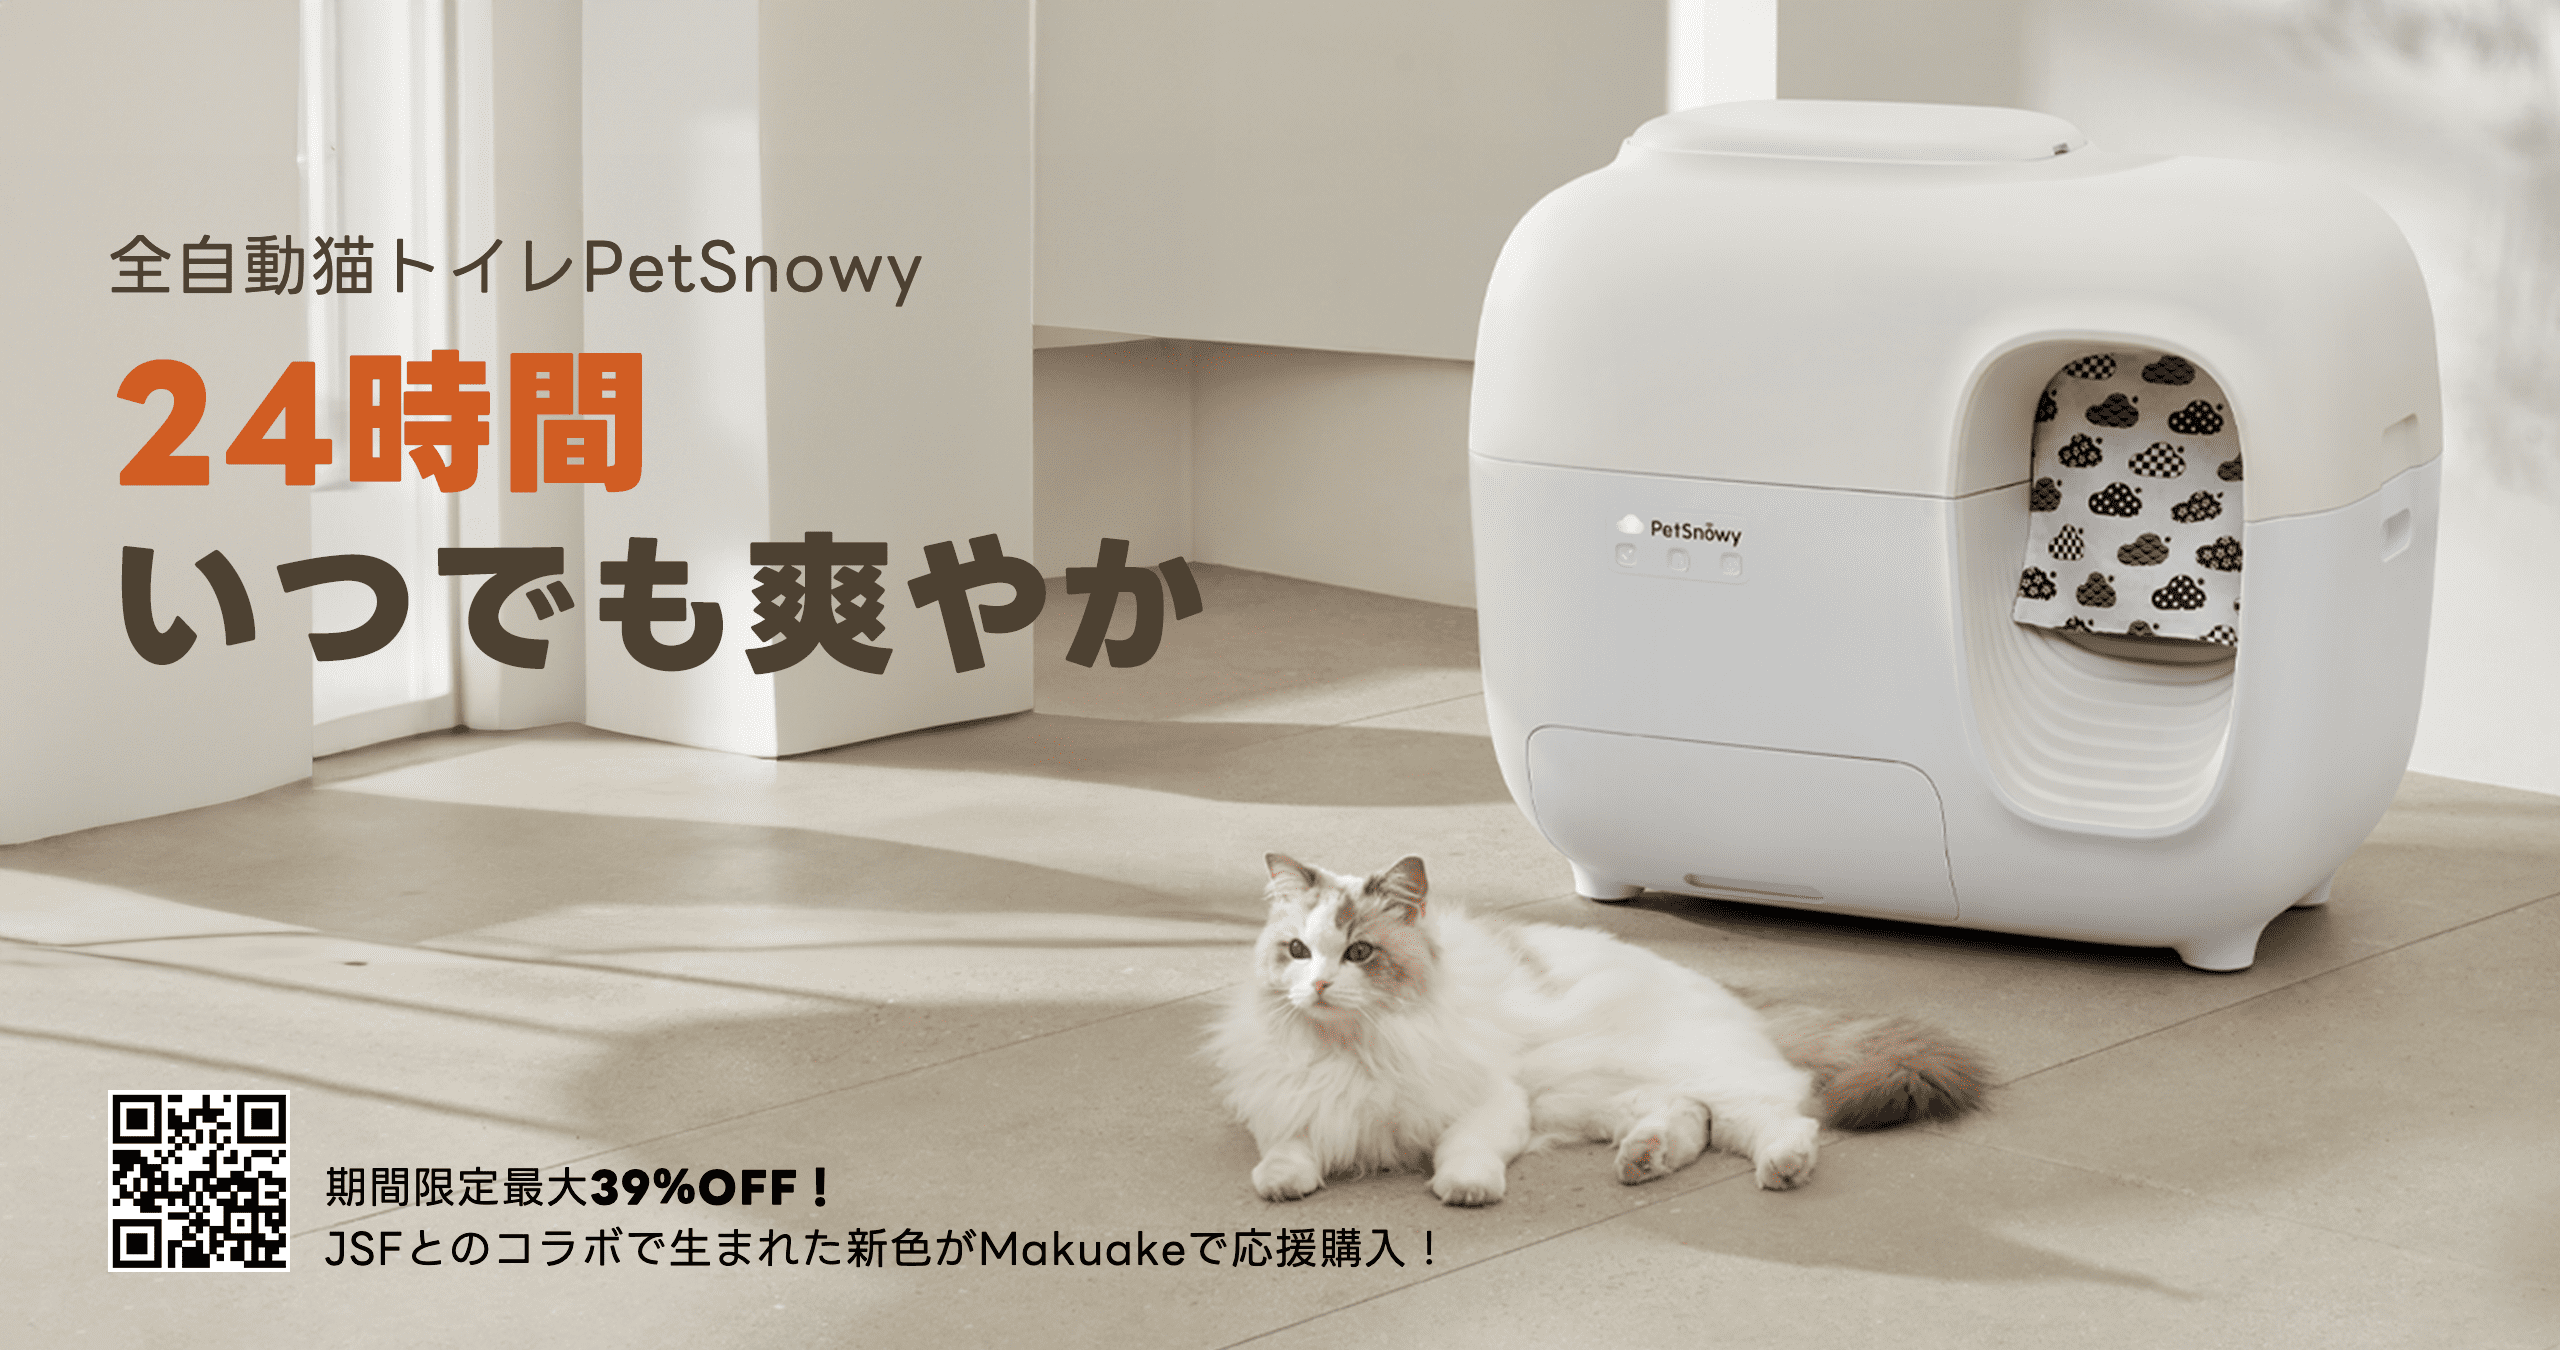 自動猫トイレPersnowy - トイレ用品